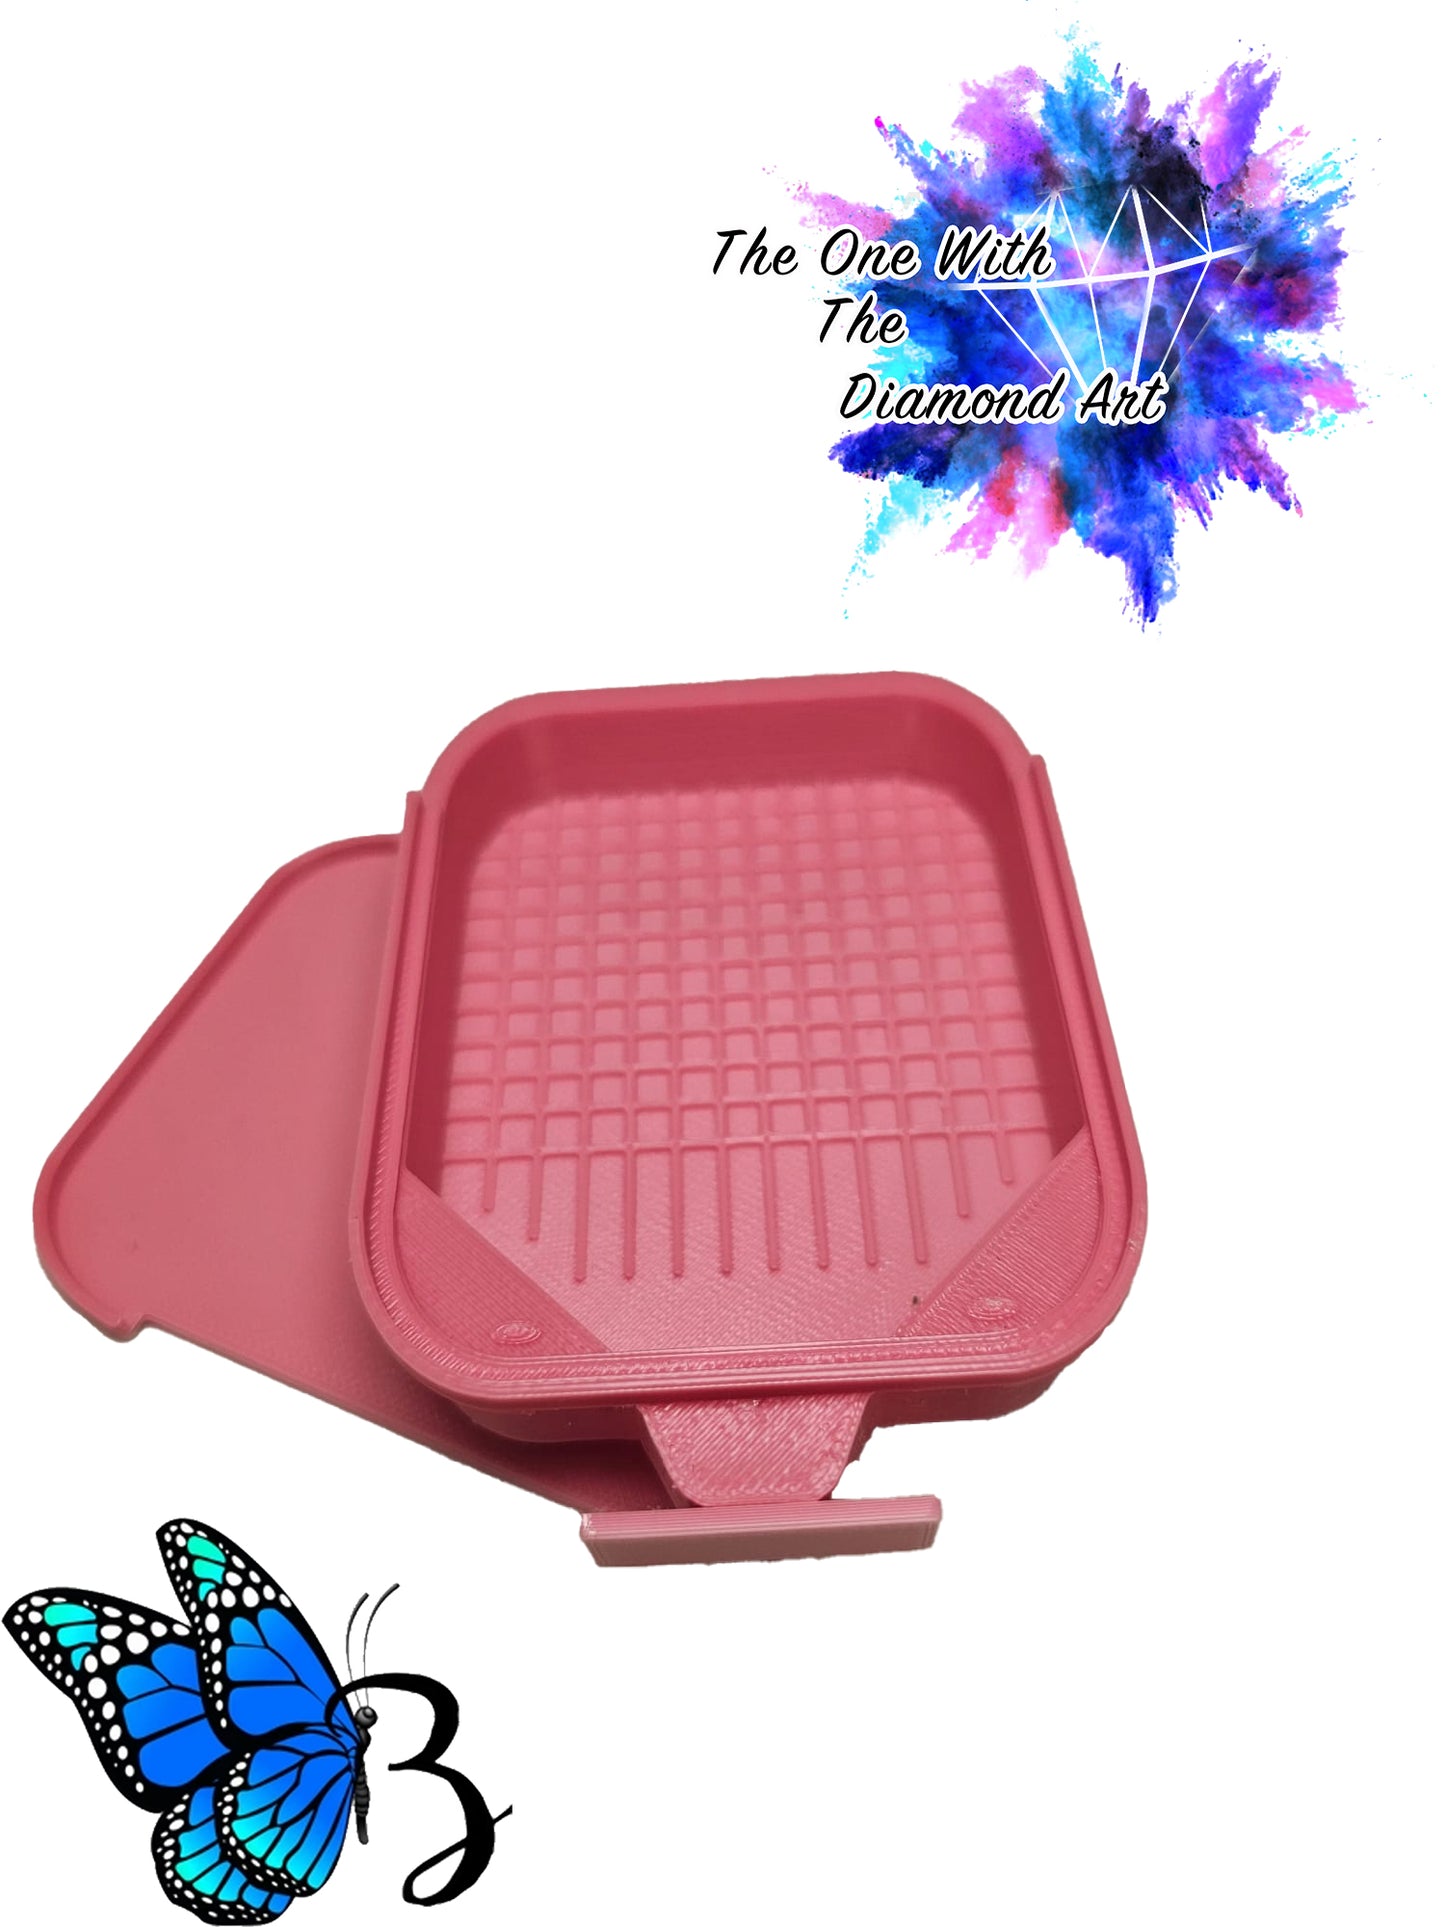 EZ GRID 3.1 Pink Ombre (Small Tray) ©Bella Art deNicole